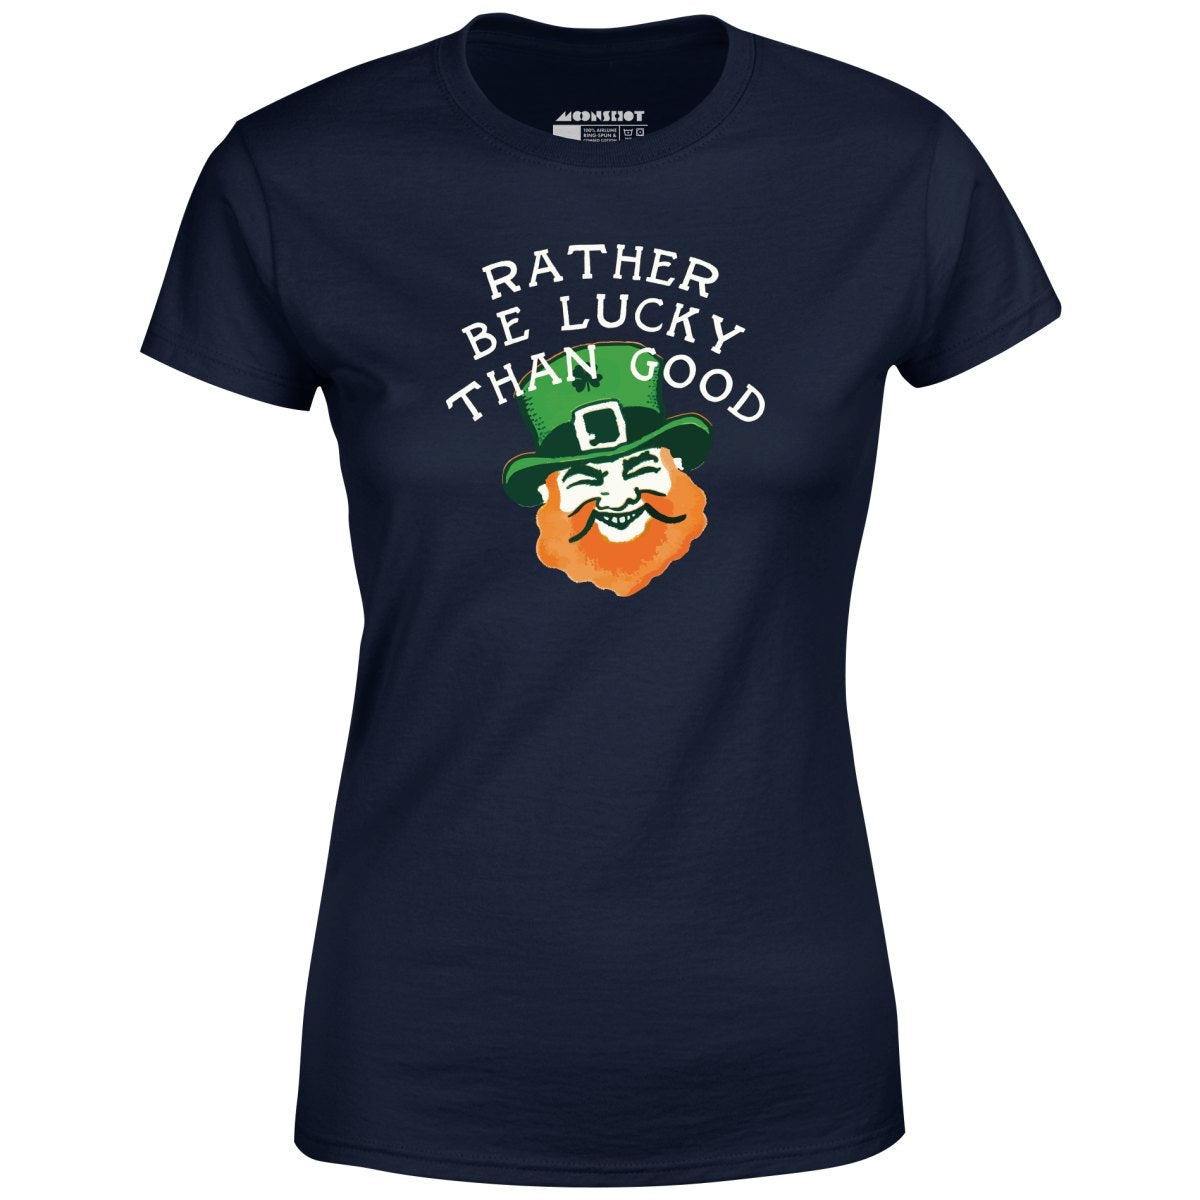 Rather Be Lucky Than Good - Women's T-Shirt